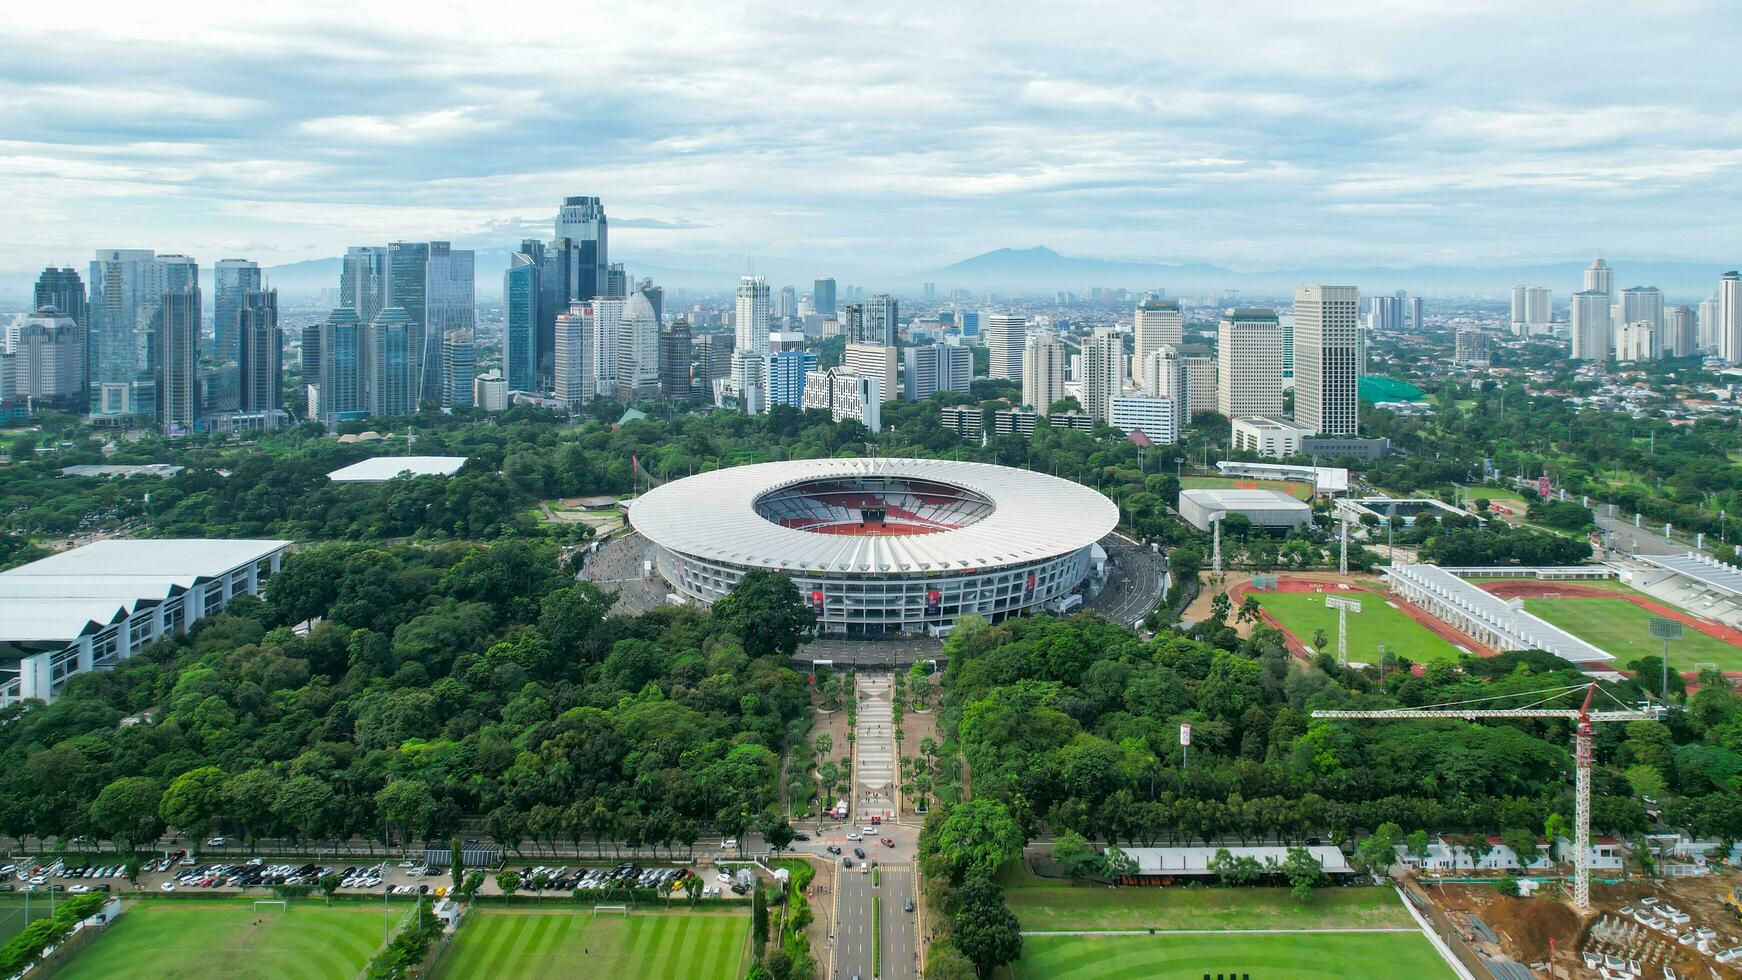 aérien vue de le magnifique paysage de senaya stade. avec jakarta paysage urbain Contexte. Djakarta, Indonésie, Mars 8, 2022 photo